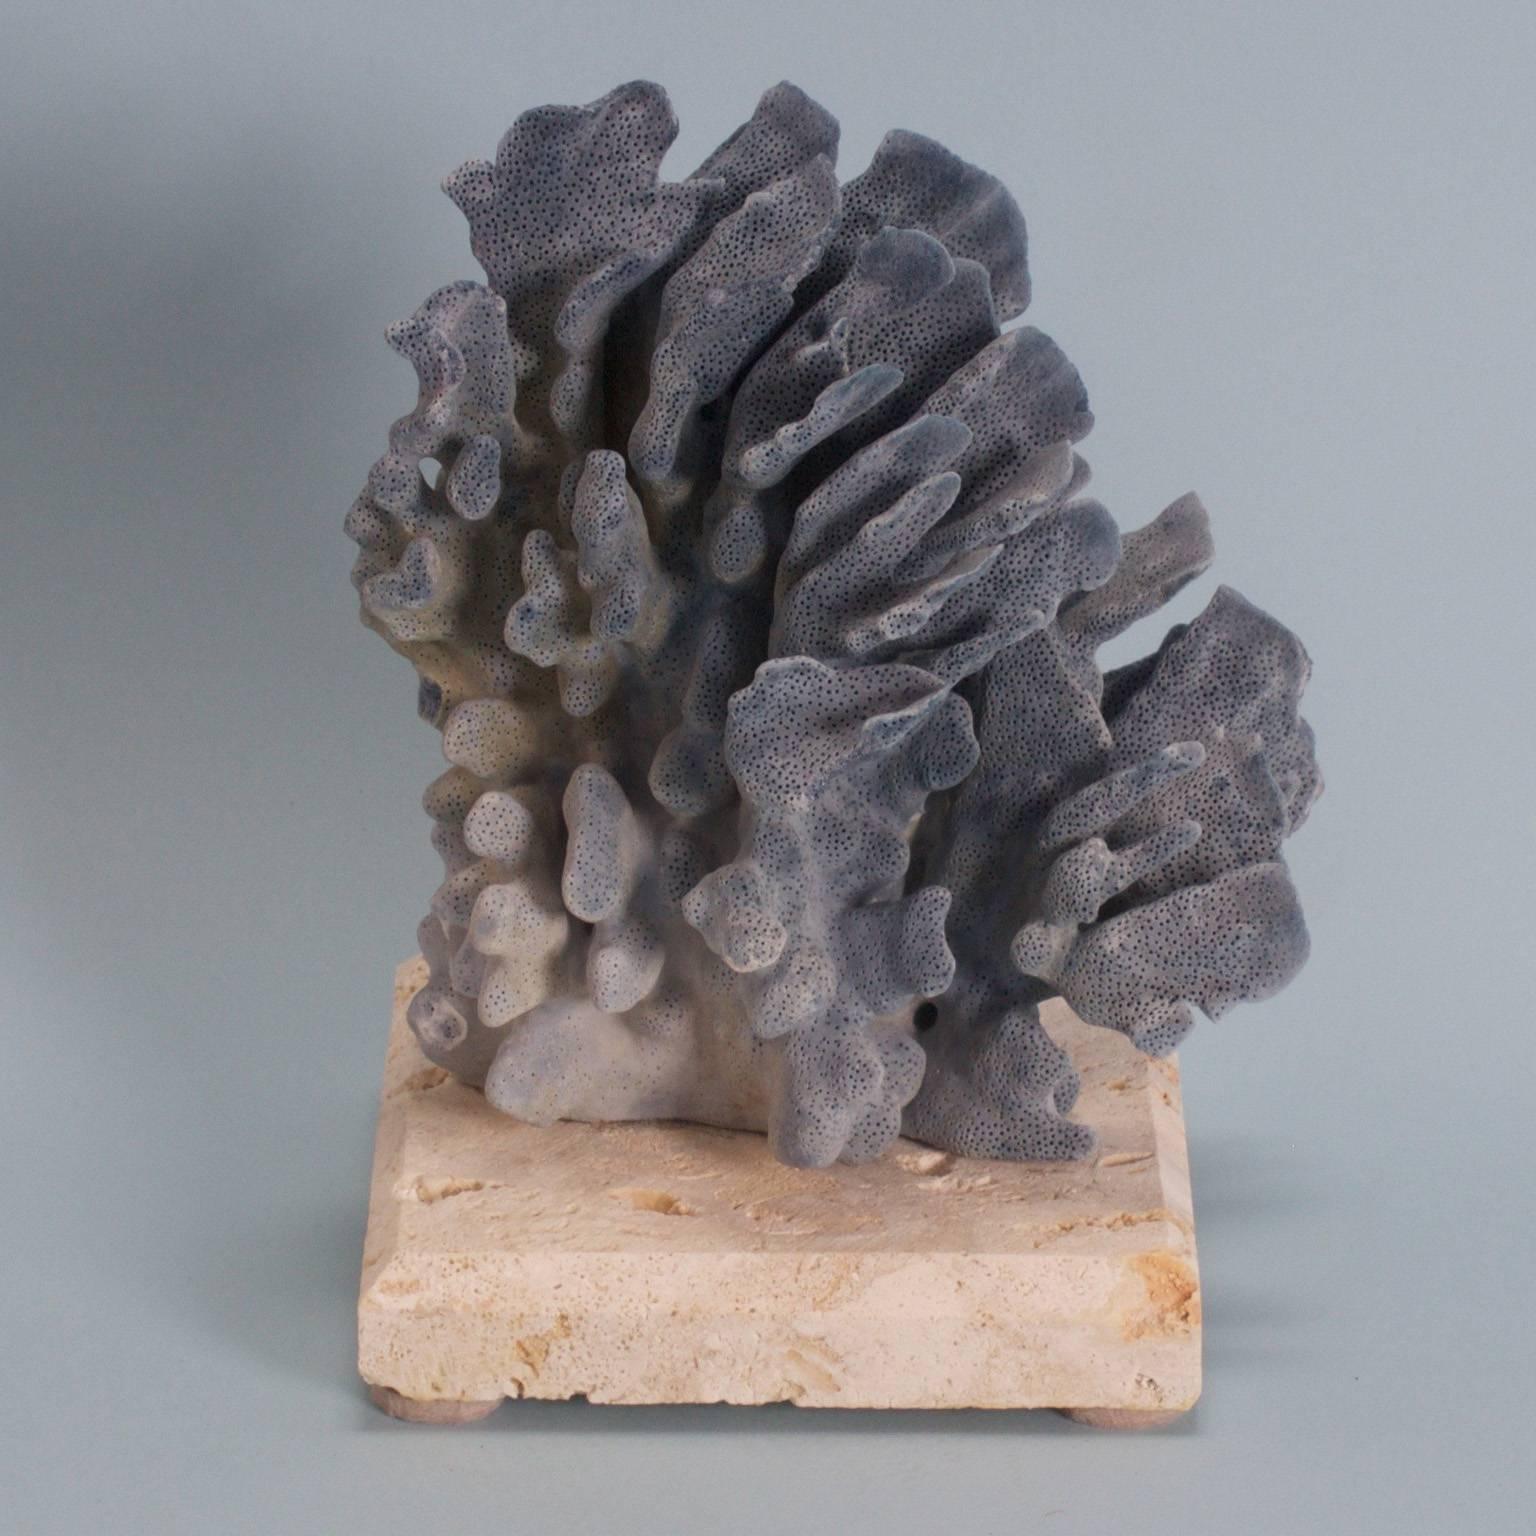 Drei inspirierende organische Skulpturen aus blauen Korallen, die von Mutter Natur geschaffen wurden und von F. S. Henemader auf speziell angefertigten Sockeln aus Kokosgestein präsentiert werden.

Bitte beachten Sie, dass Korallen ohne umfangreiche